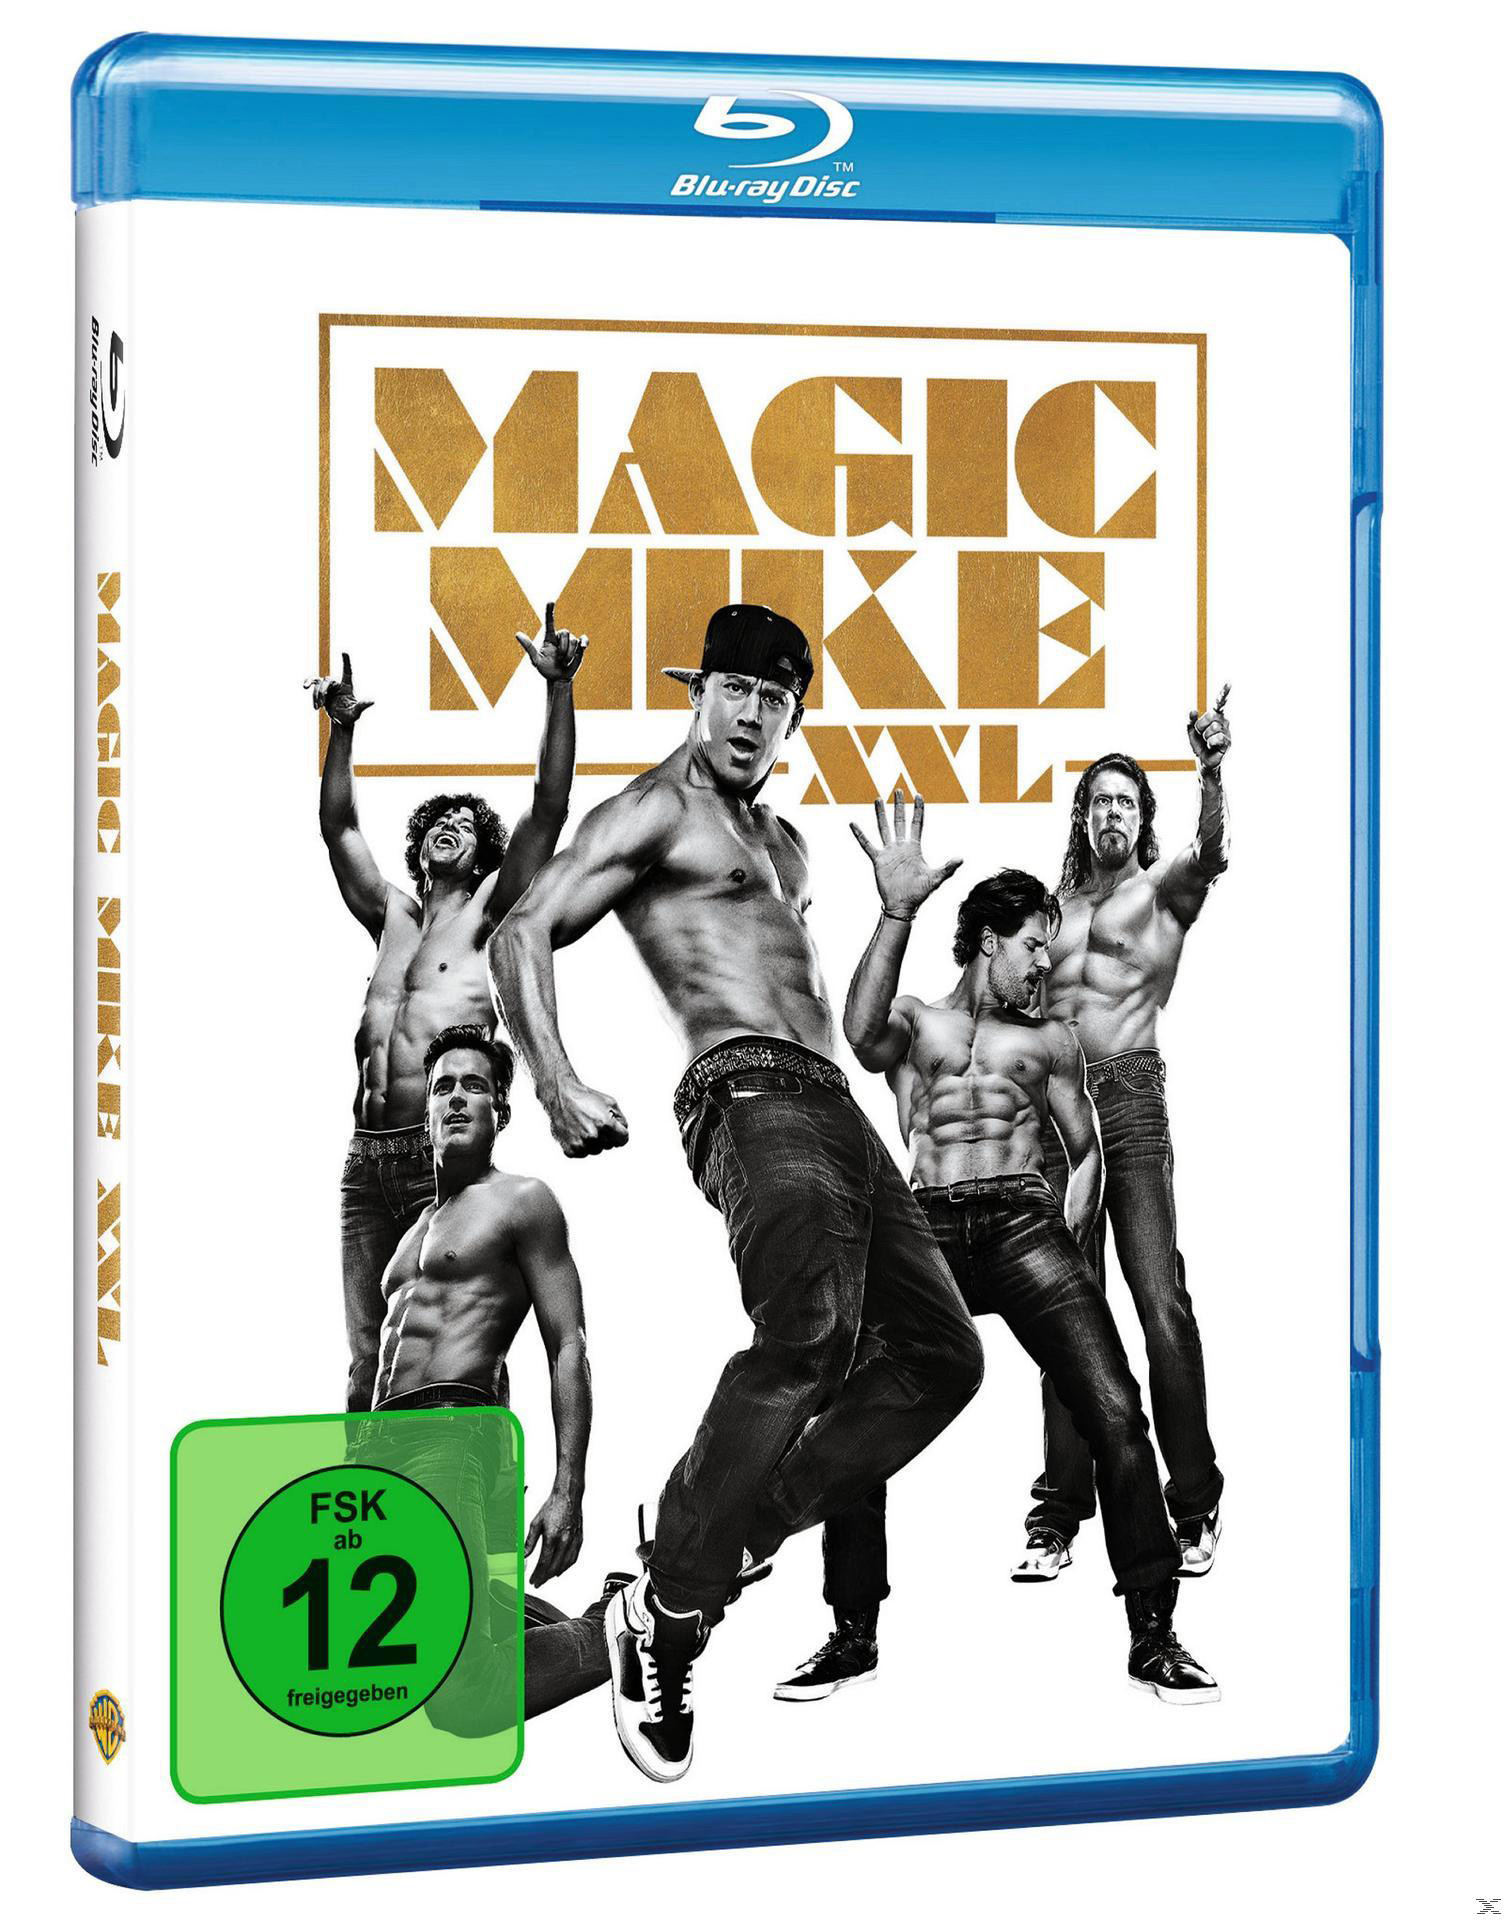 Magic Blu-ray Mike XXL